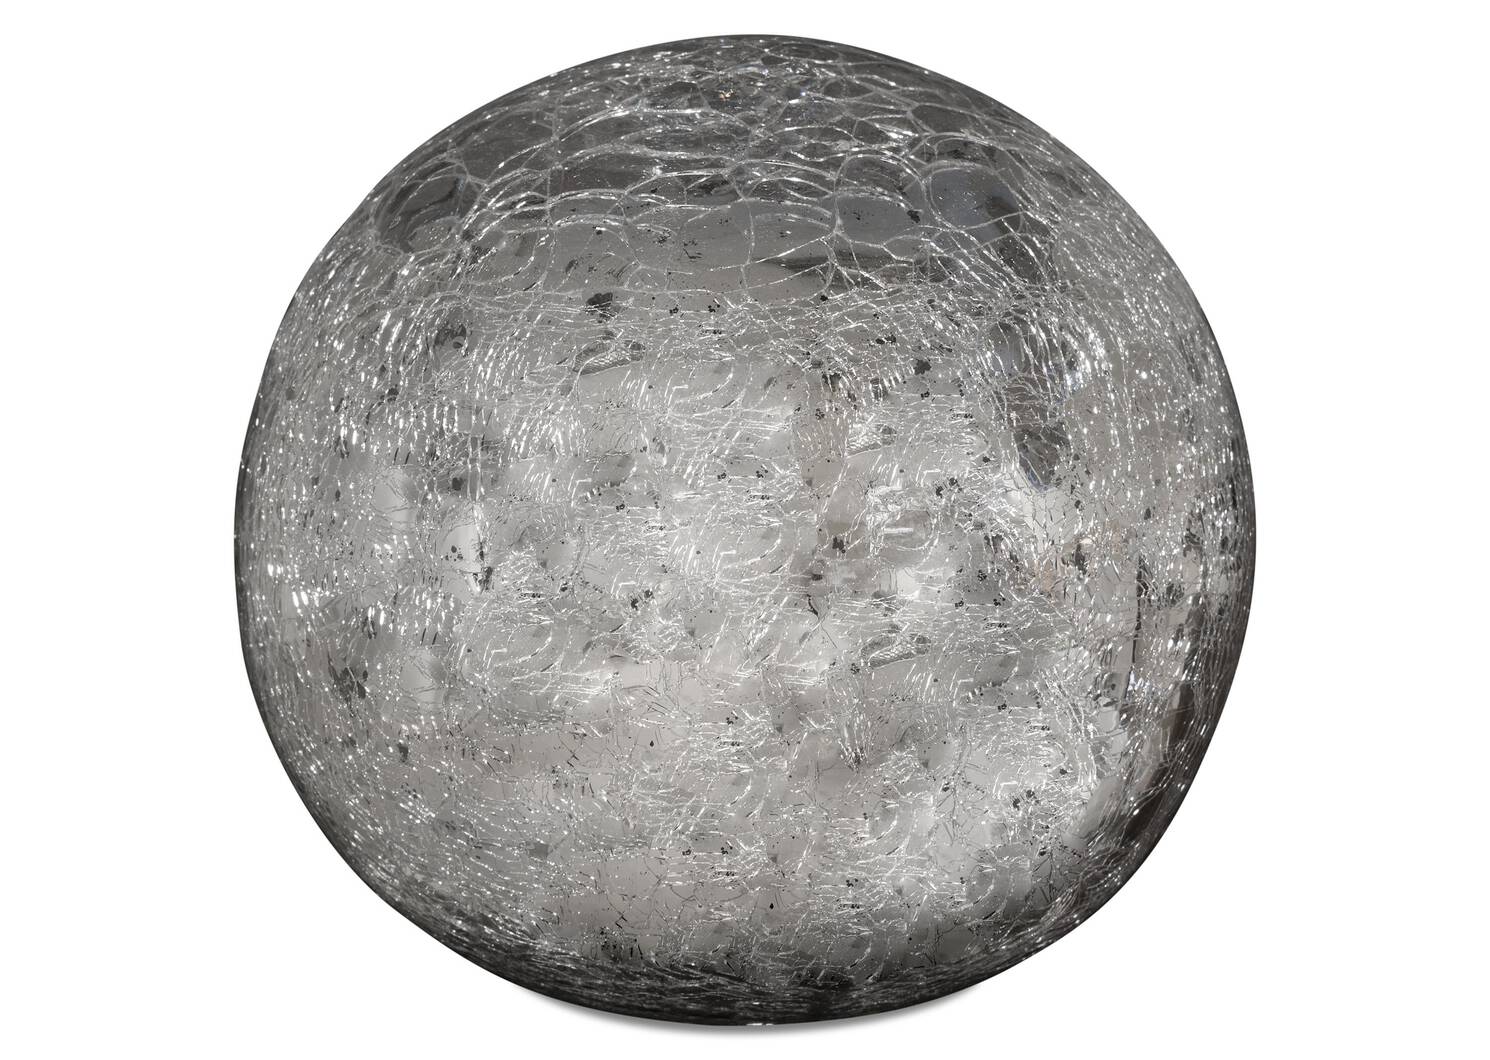 Donatella Decor Ball Small Silver